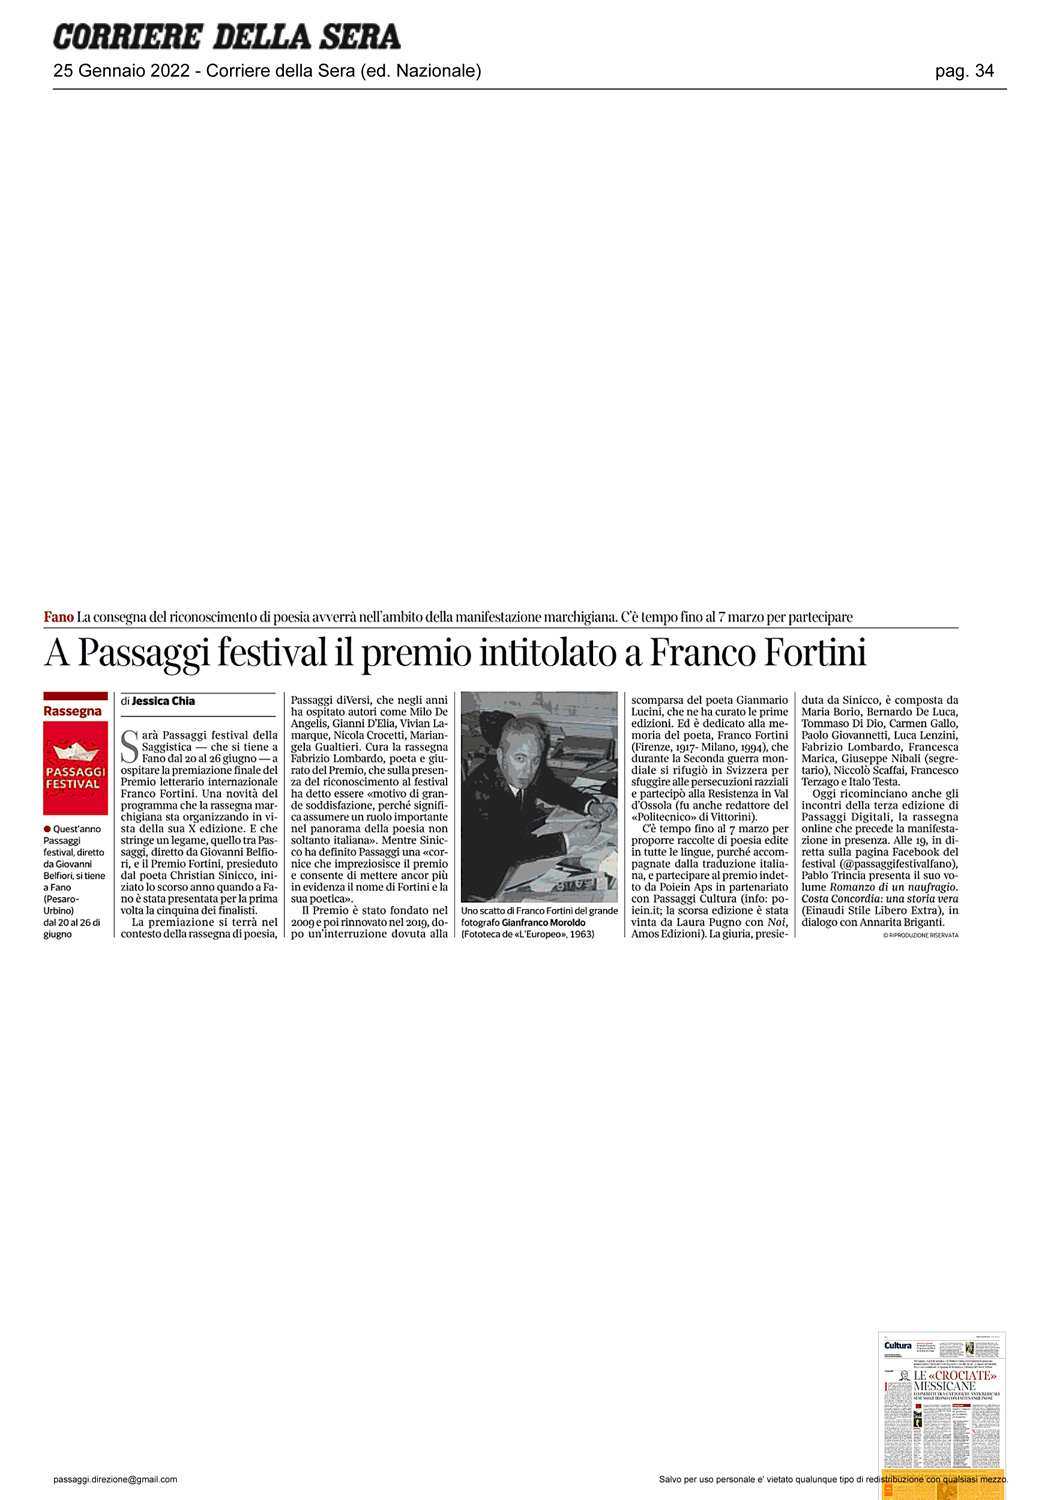 Corriere_della_Sera_a-passaggi-festival-il-premio-intitolato-a-franco-fortini.